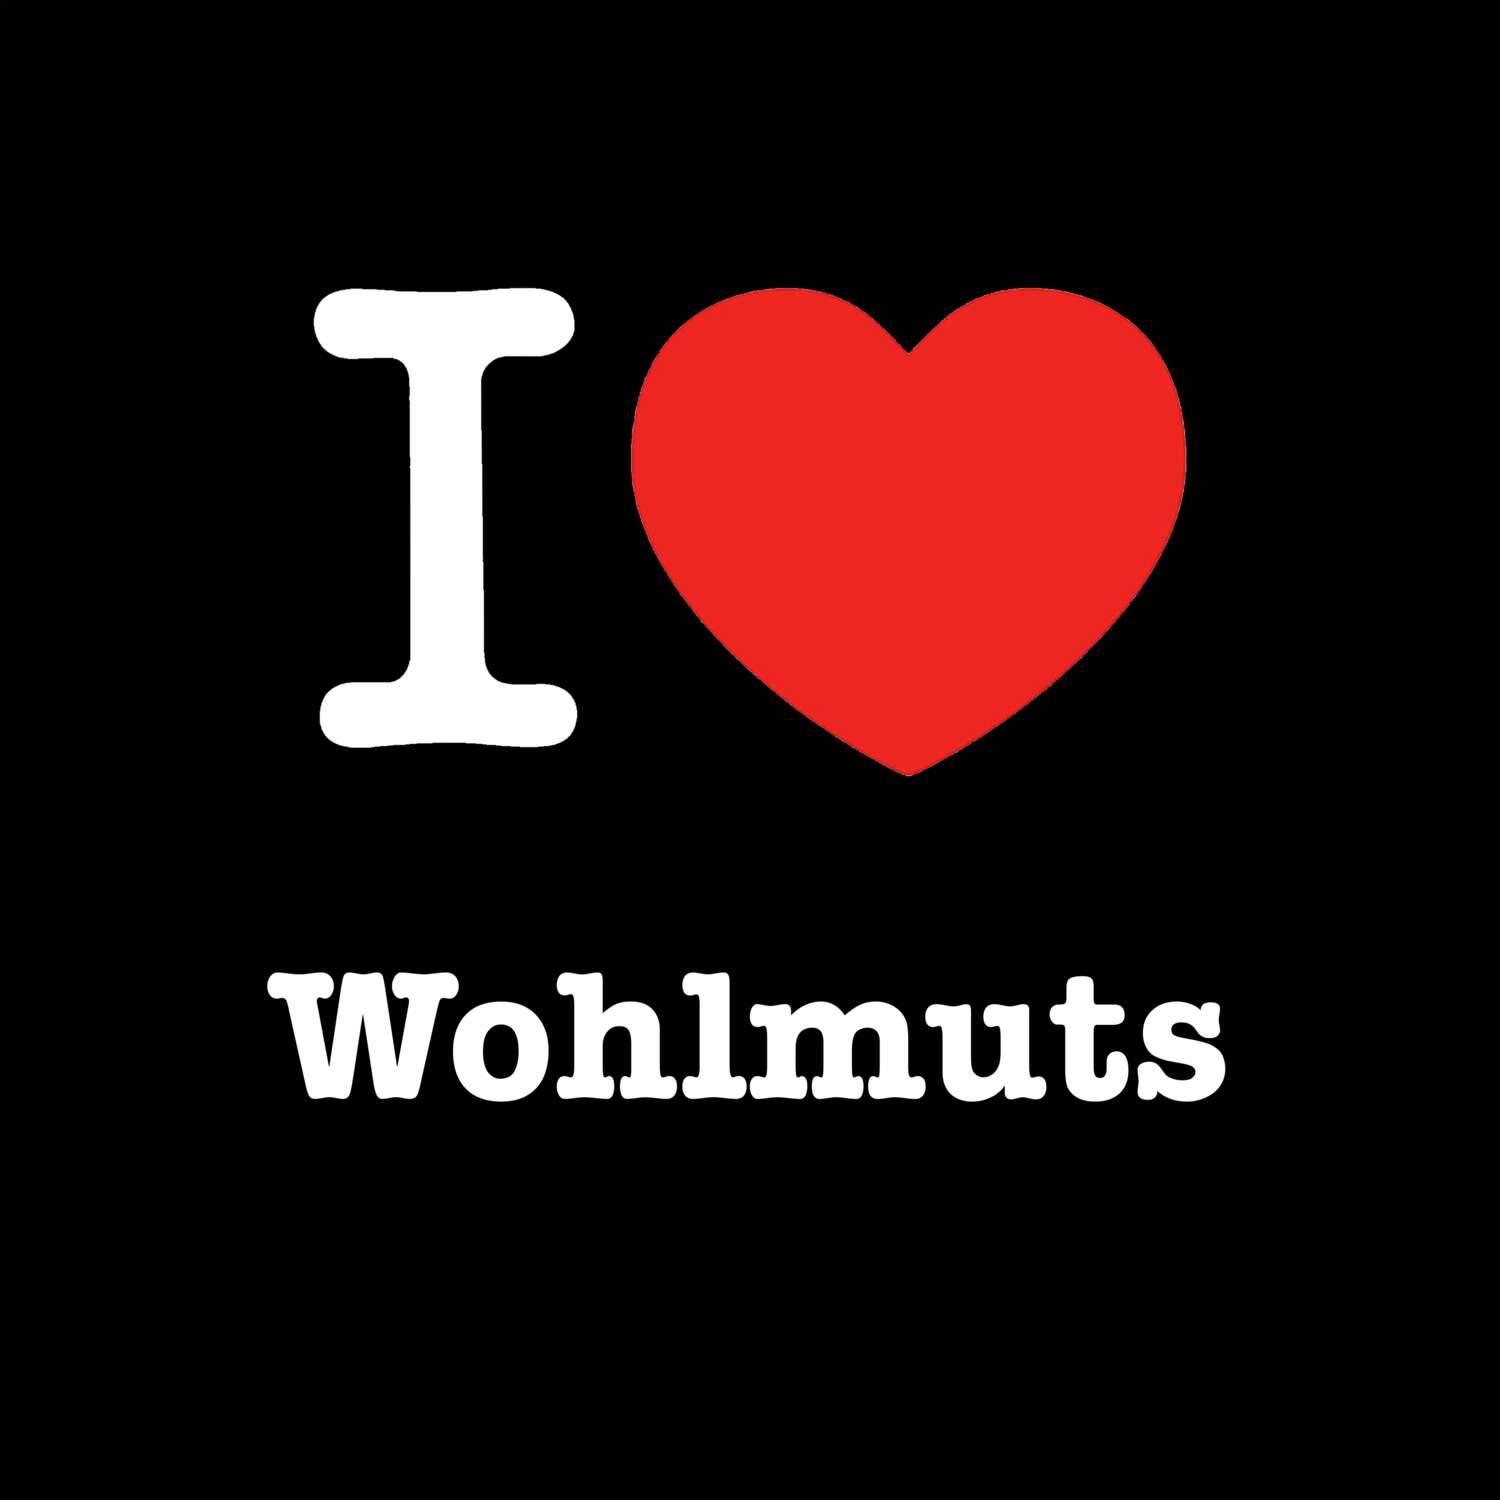 Wohlmuts T-Shirt »I love«